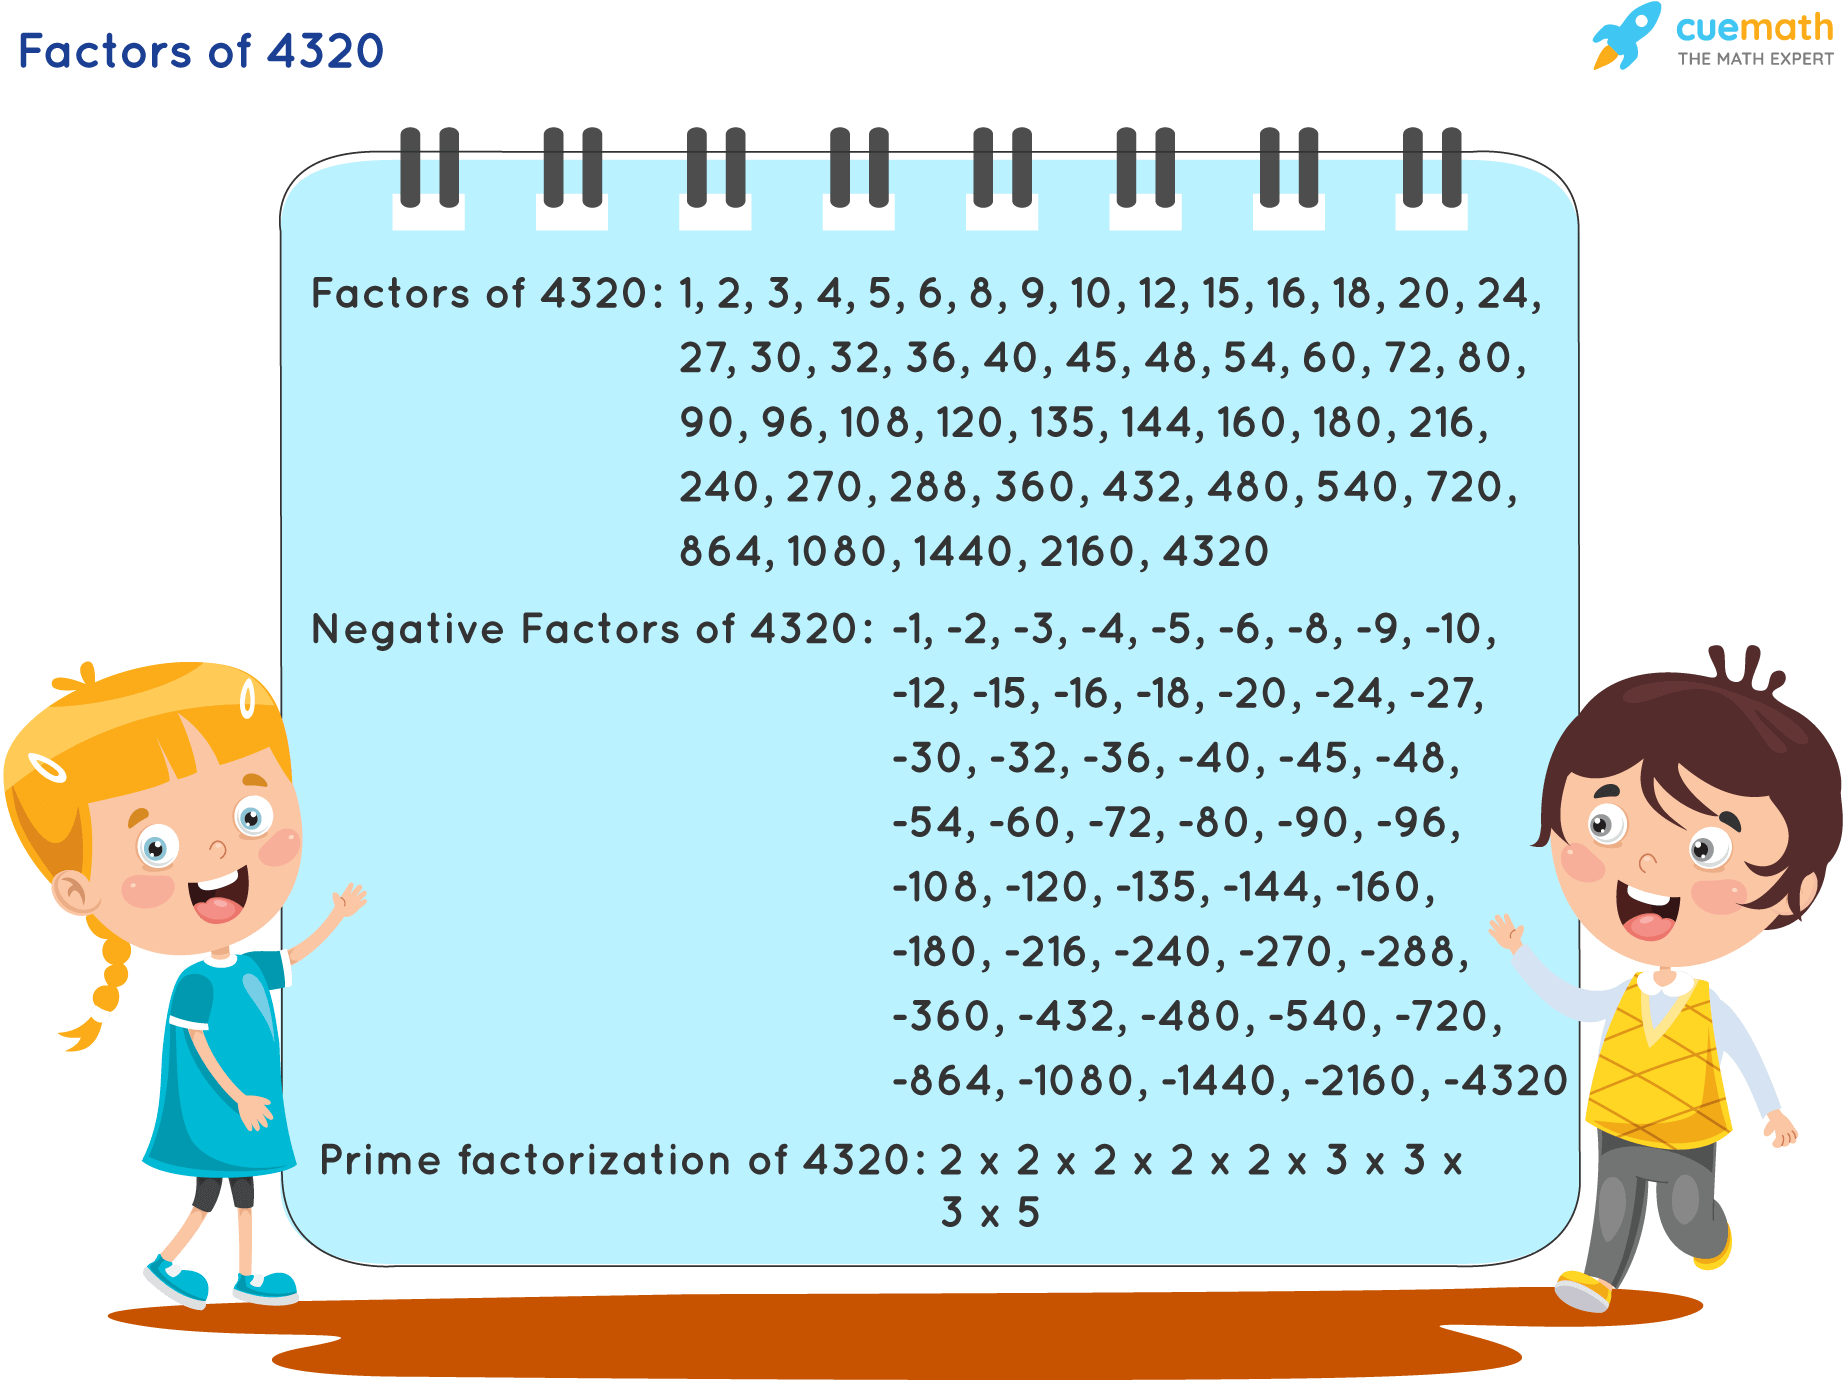 Factors of 4320